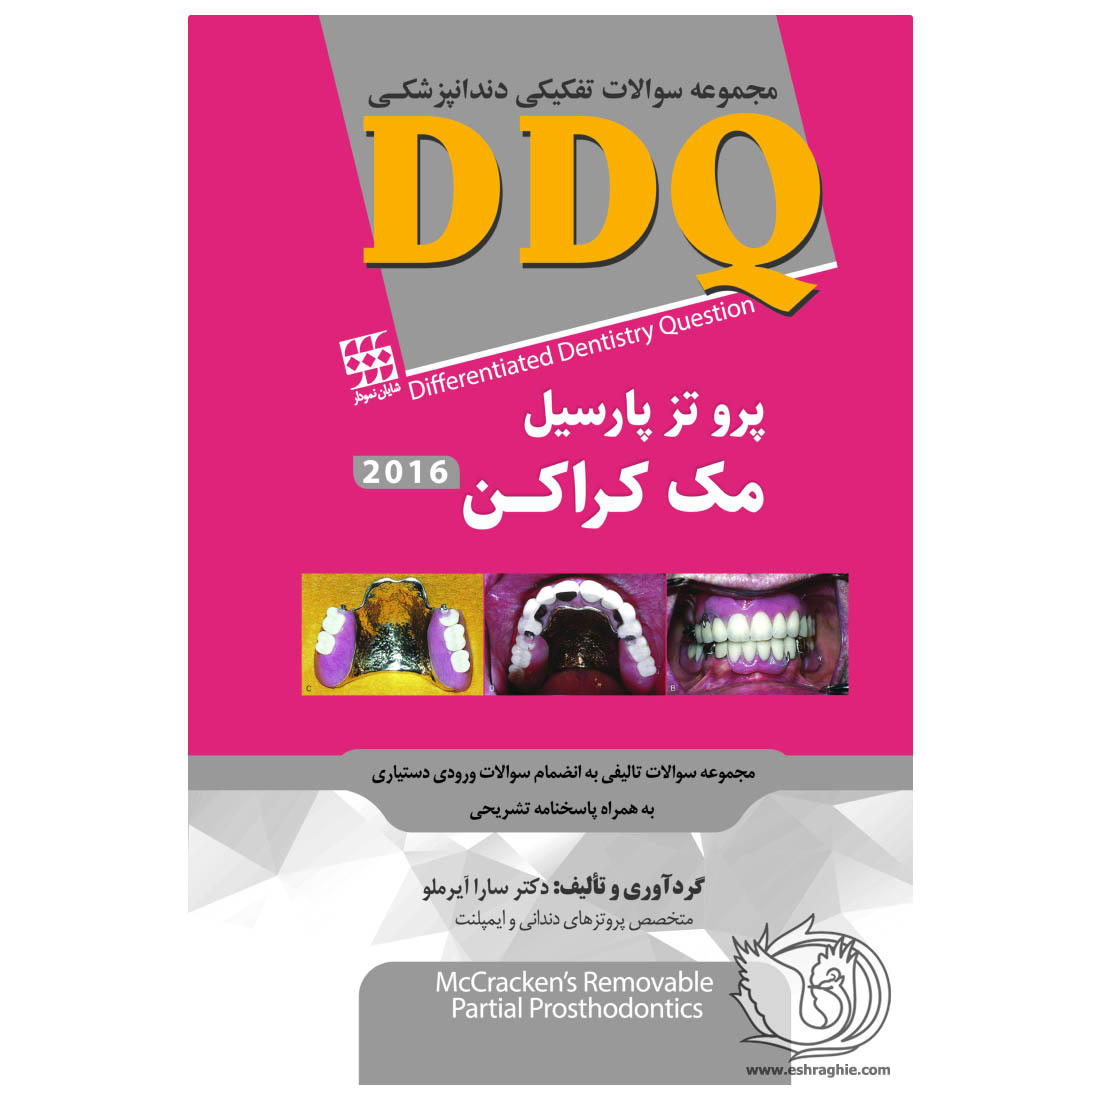 DDQ پروتز پارسیل مک کراکن ۲۰۱۶ - خرید کتاب دندانپزشکی از نشر اشراقیه